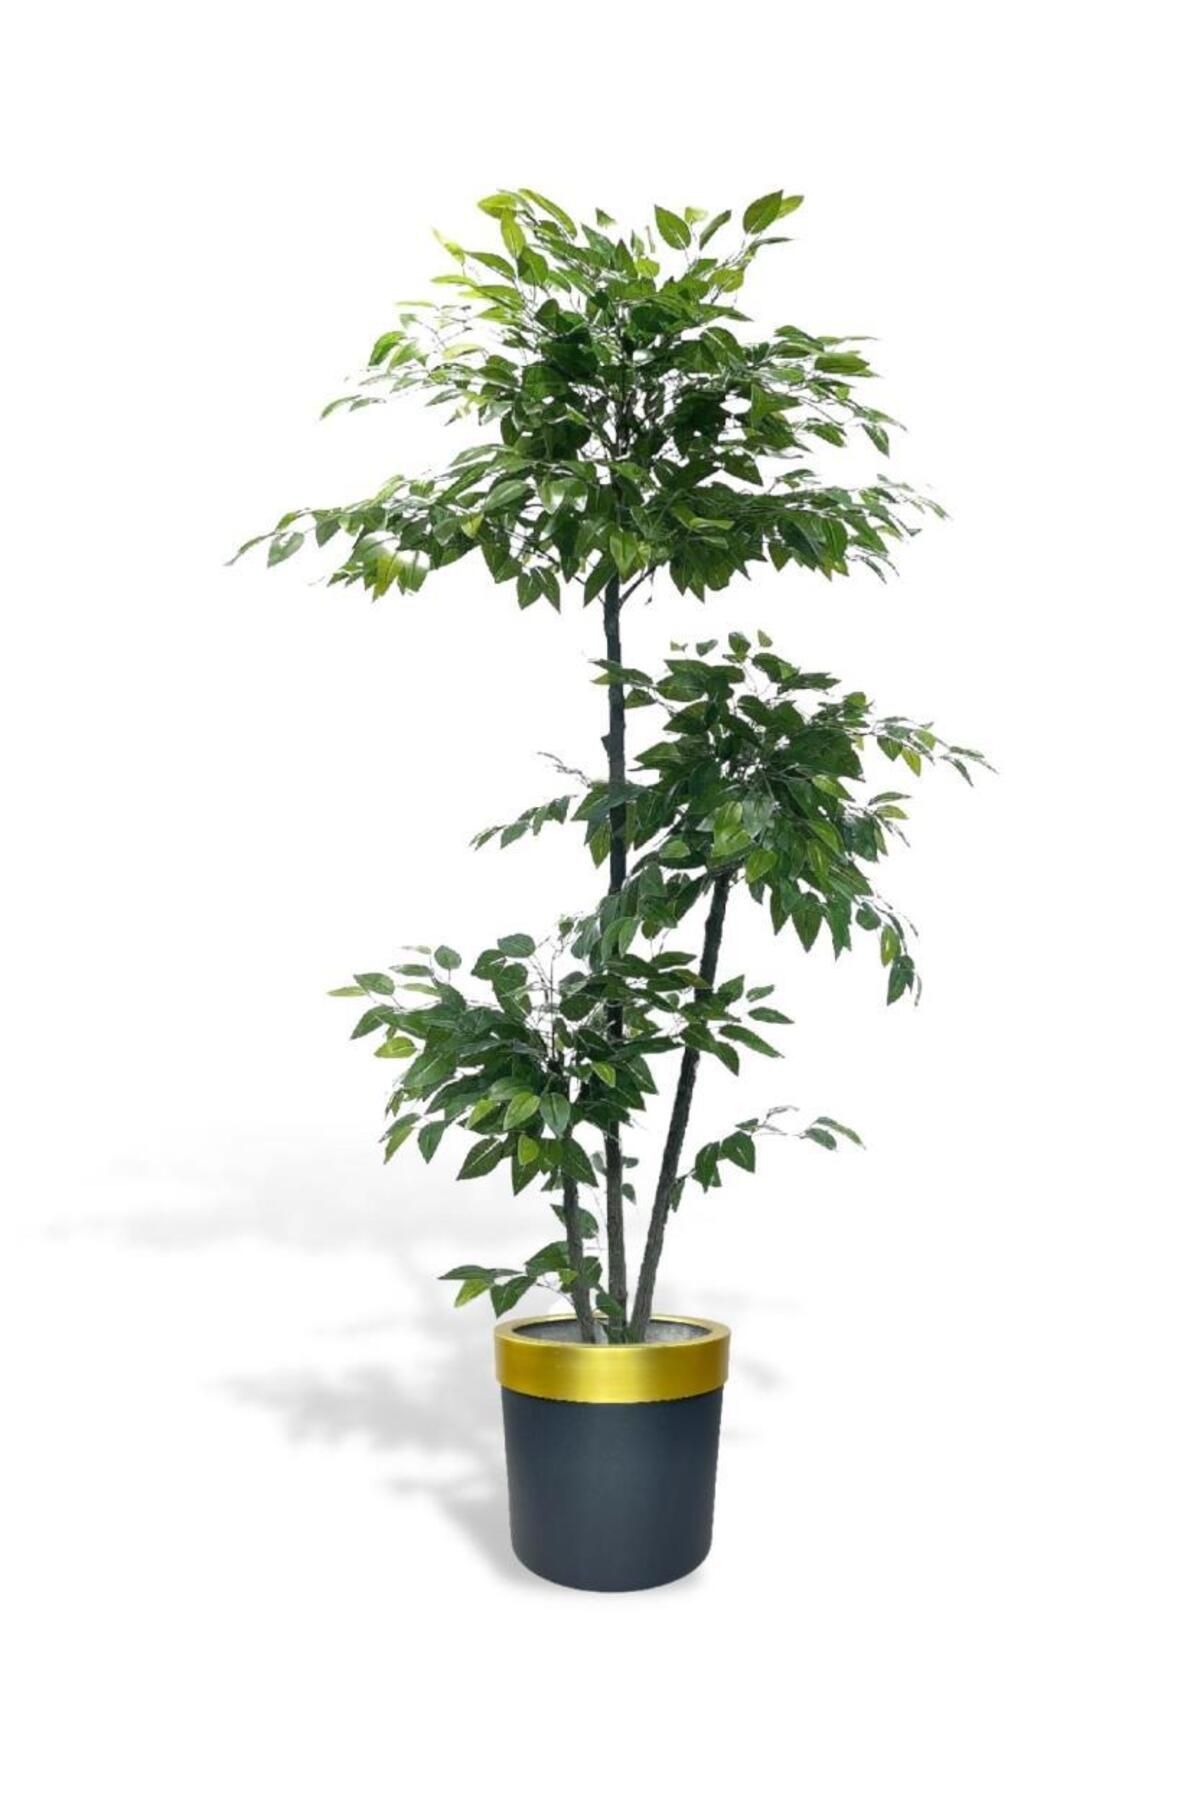 Nettenevime Yapay Ağaç 3 Katlı Benjamin Gold Siyah Galvaniz Saksıda 190 Cm 1.kalite Yapay Çiçek Dekoru